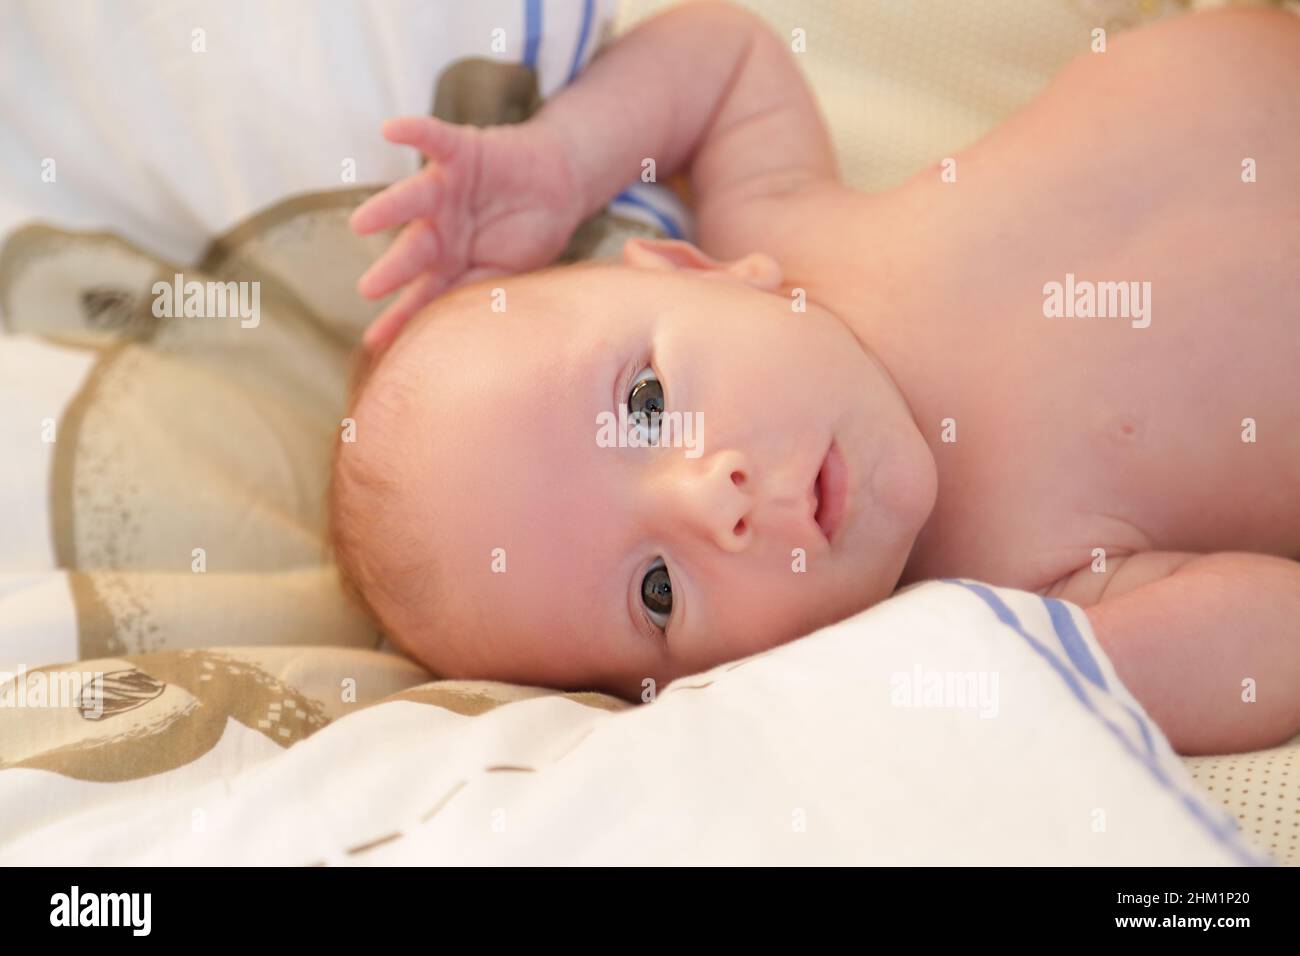 Le nouveau-né regarde dans l'appareil photo Banque D'Images